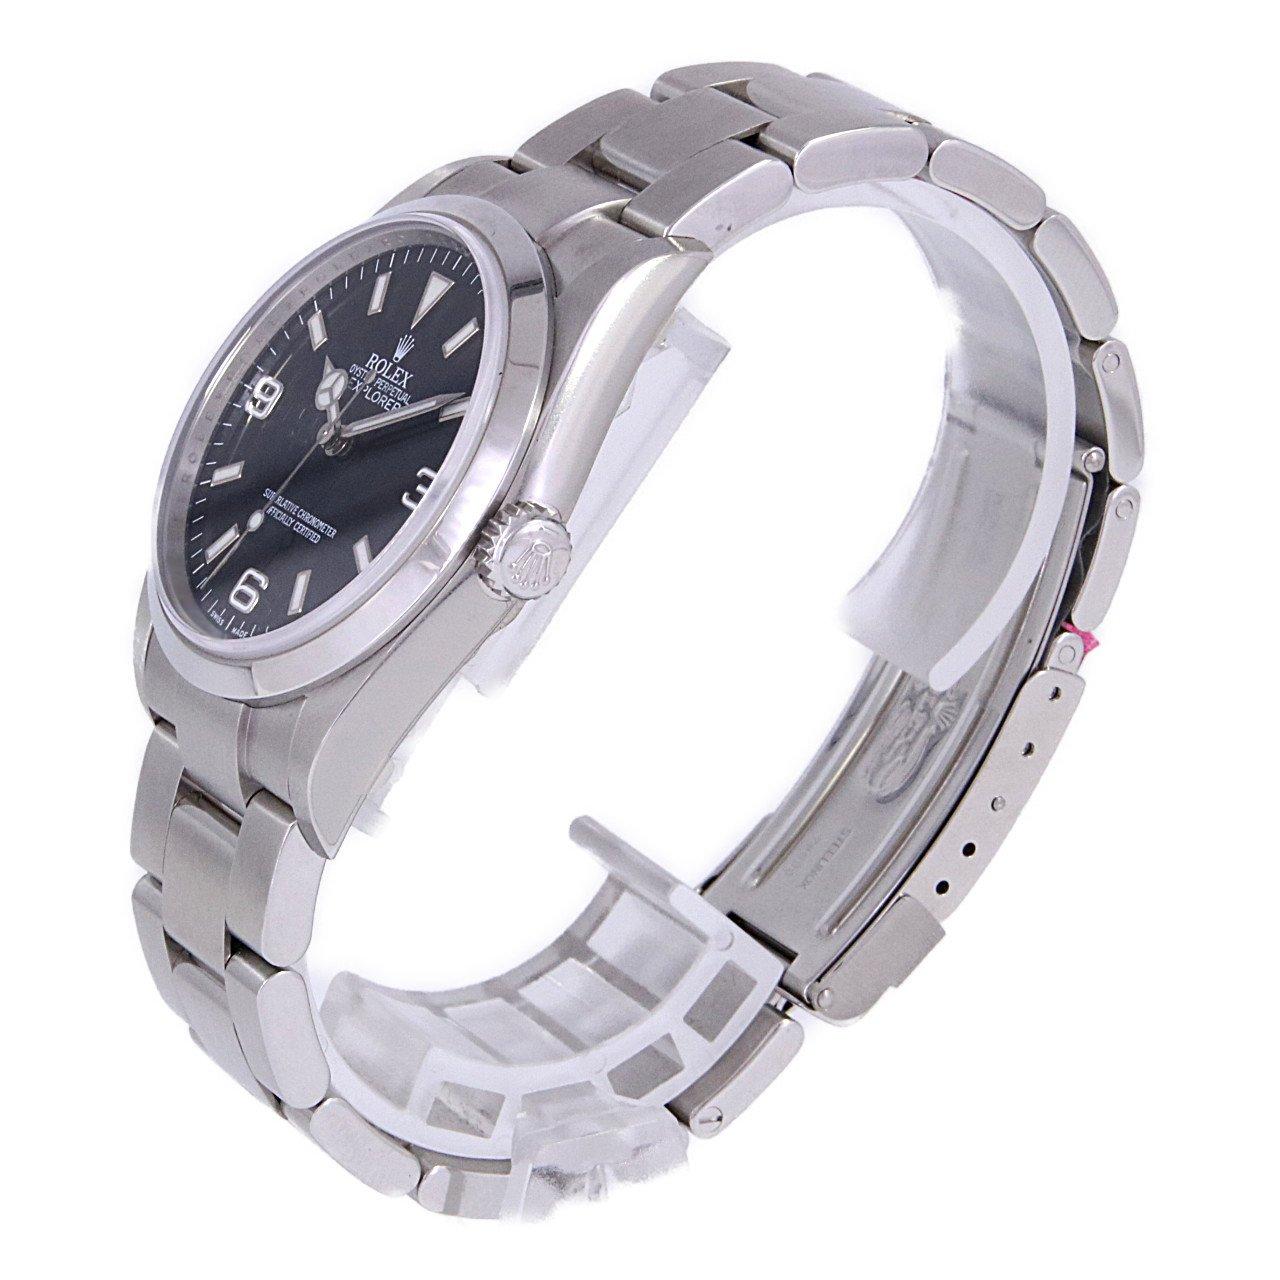 【106007】ROLEX ロレックス  114270 エクスプローラー ブラックダイヤル Y番 SS 自動巻き 当店オリジナルボックス 腕時計 時計 WATCH メンズ 男性 男 紳士